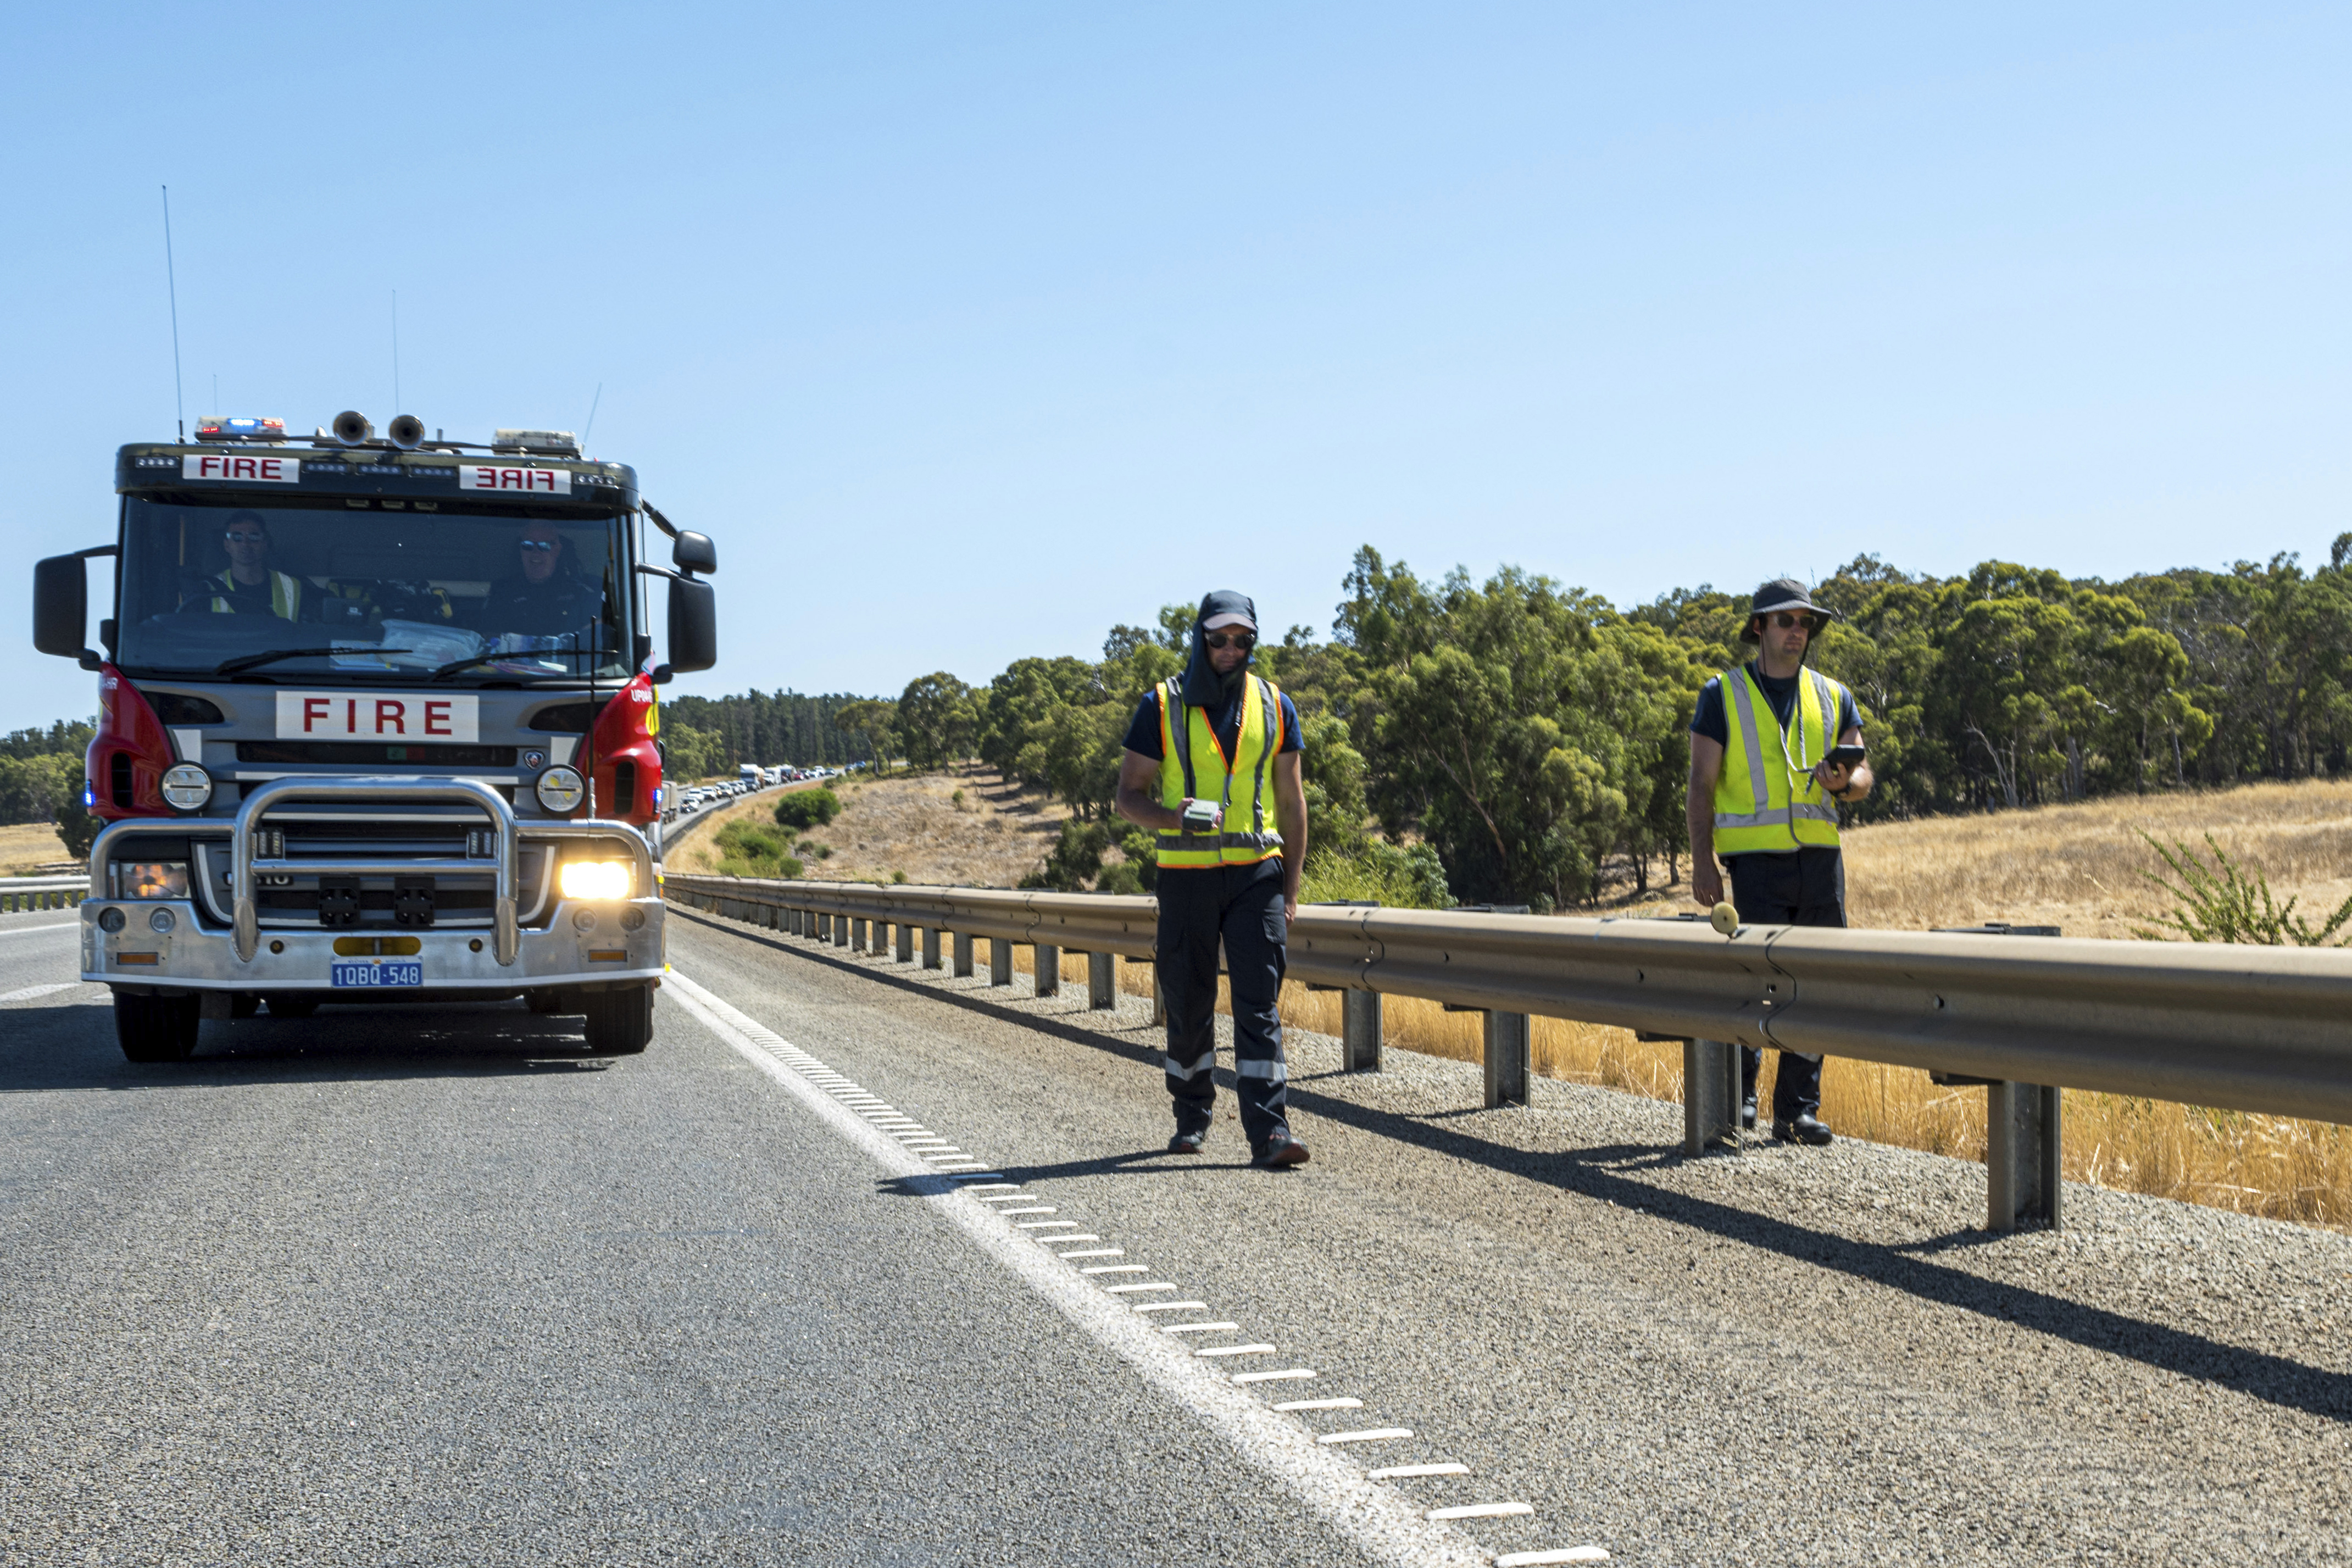 Fire truck searching road in Australia.